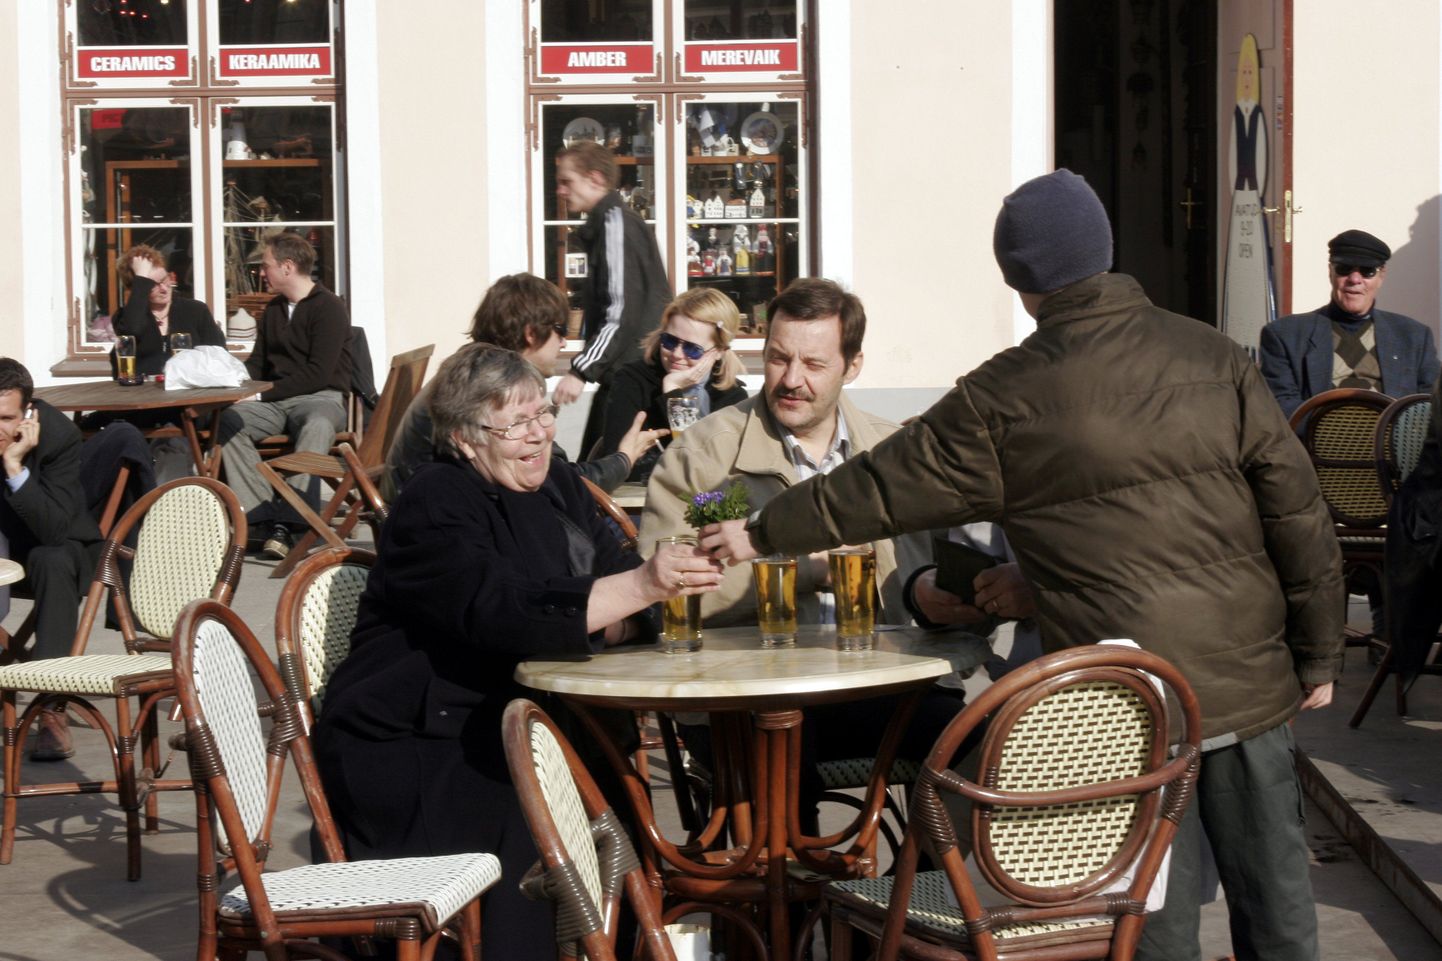 Briti ajaleht The Telegraph soovitab Tallinna külastades hoiduda Raekoja platsi kohvikutest.